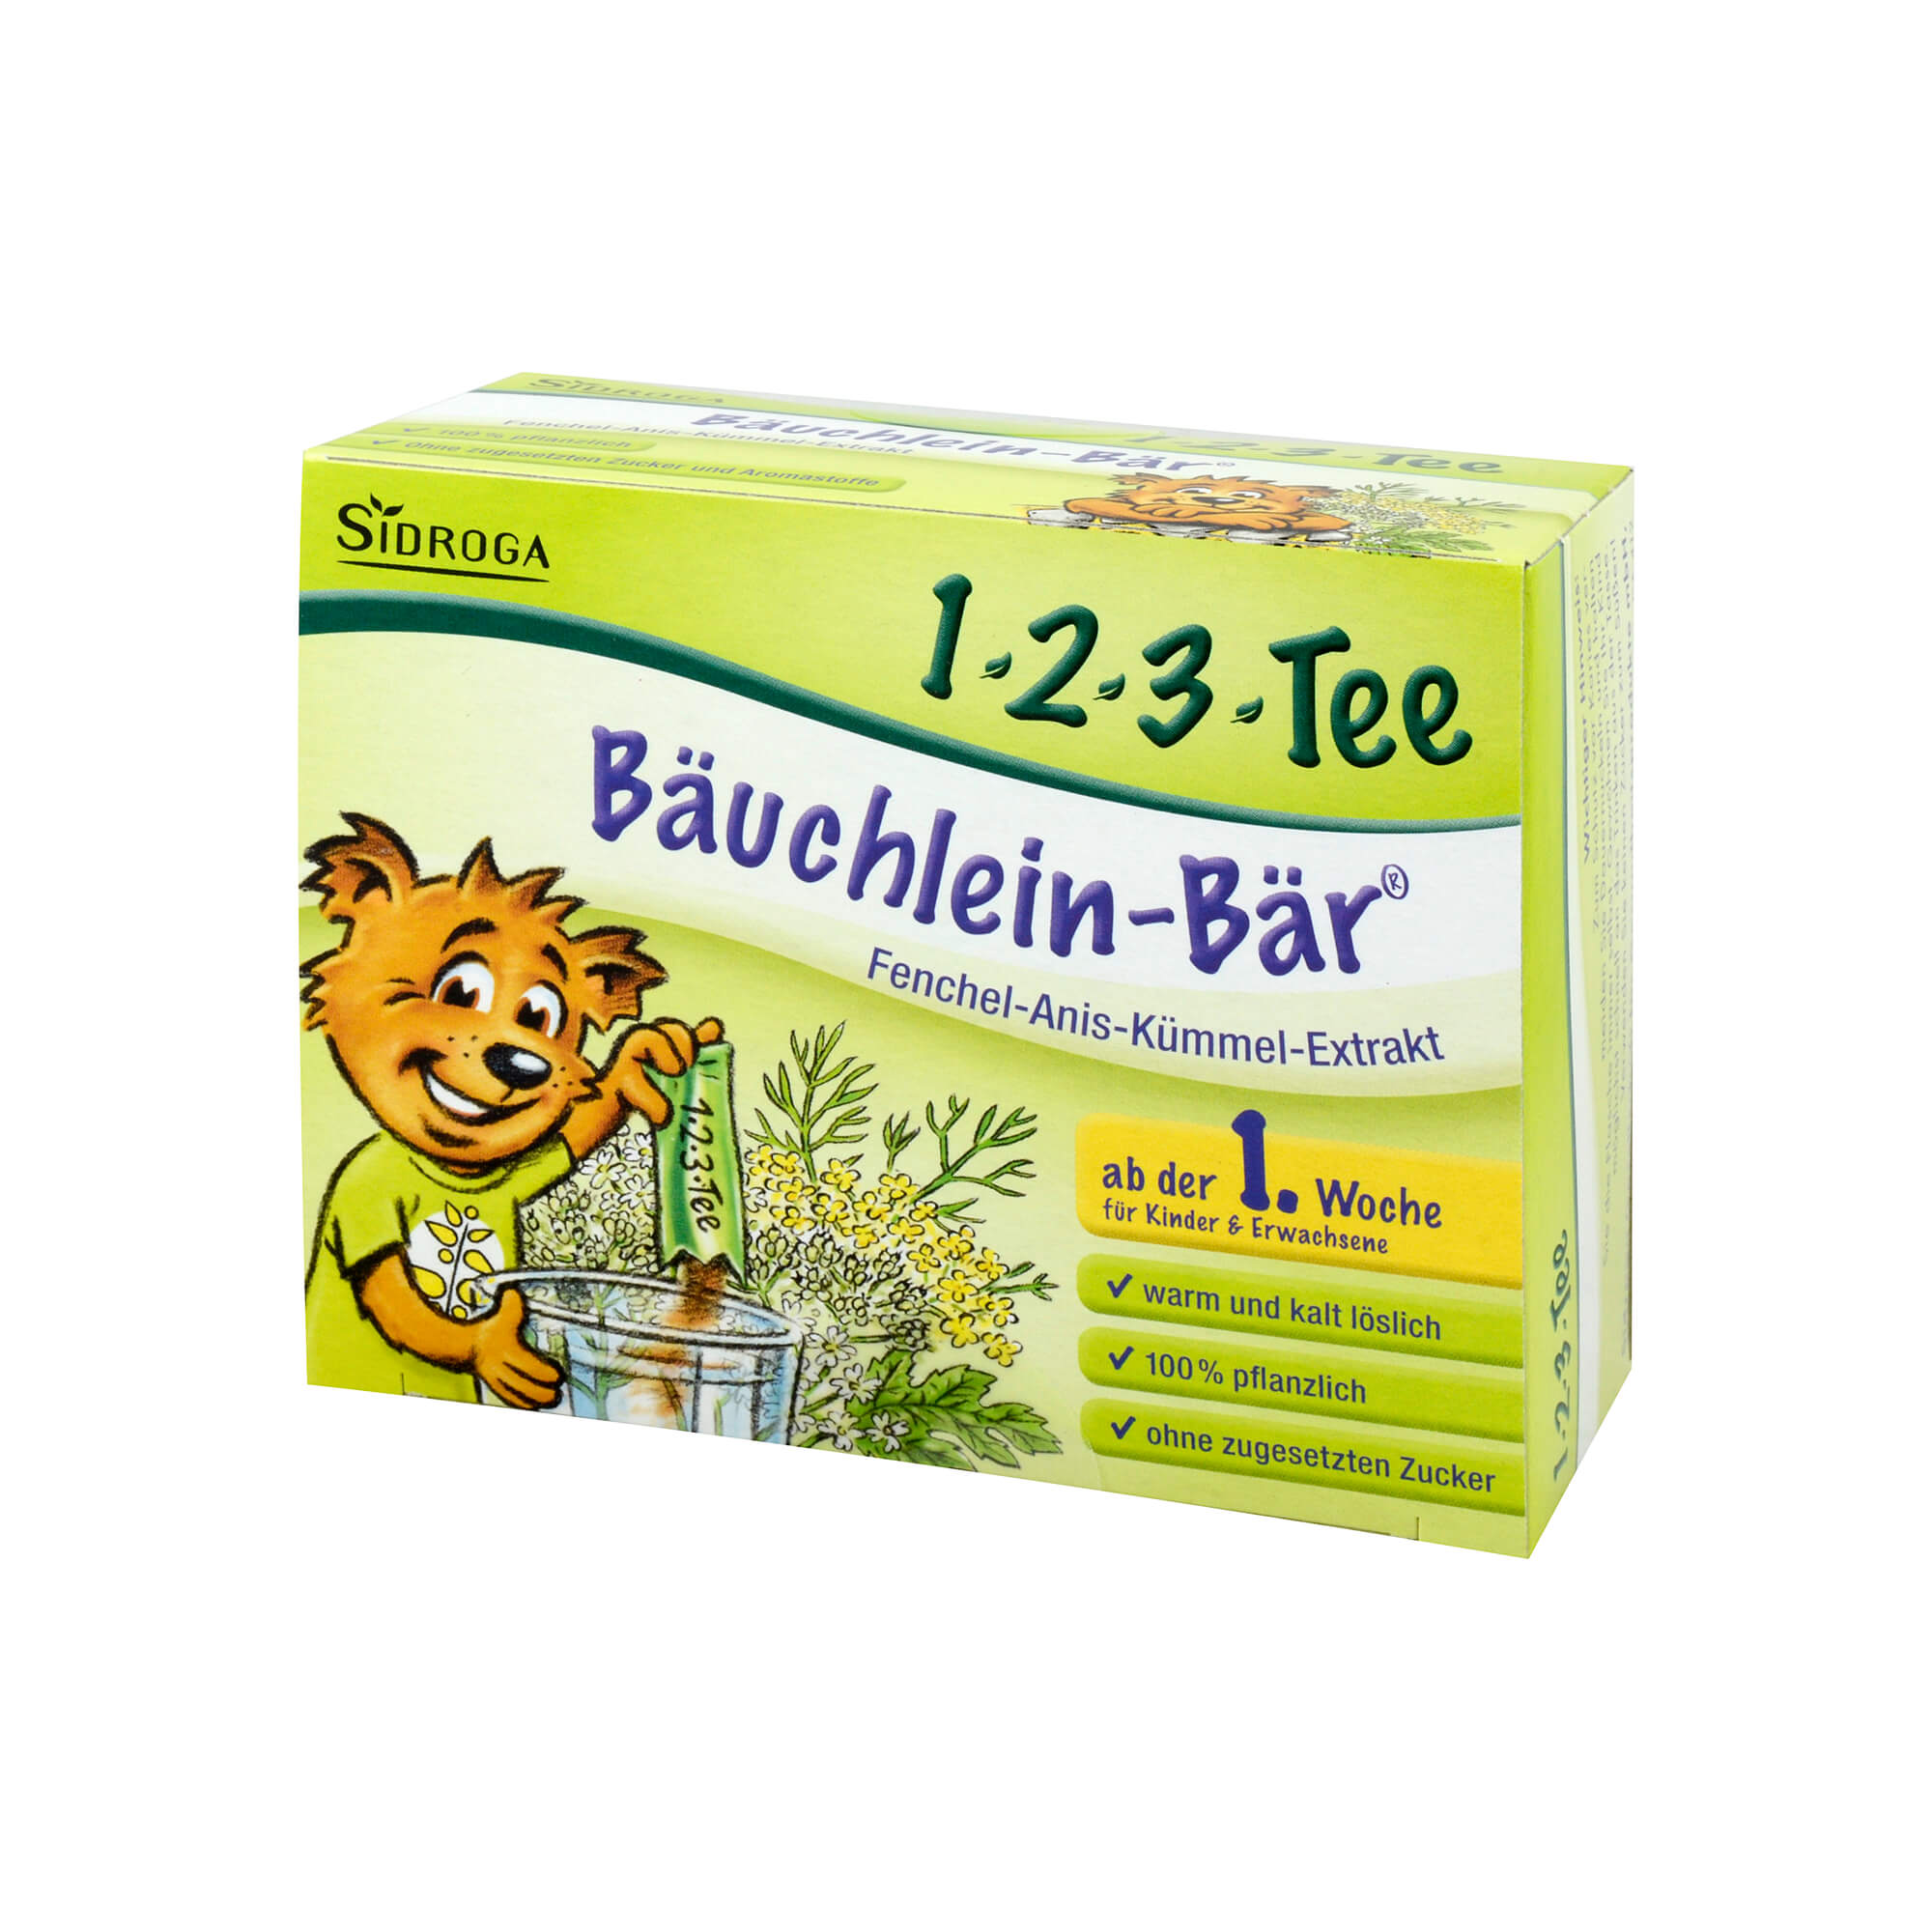 Fenchel-Anis-Kümmel-Extrakt. Für Babys ab der 1. Woche.